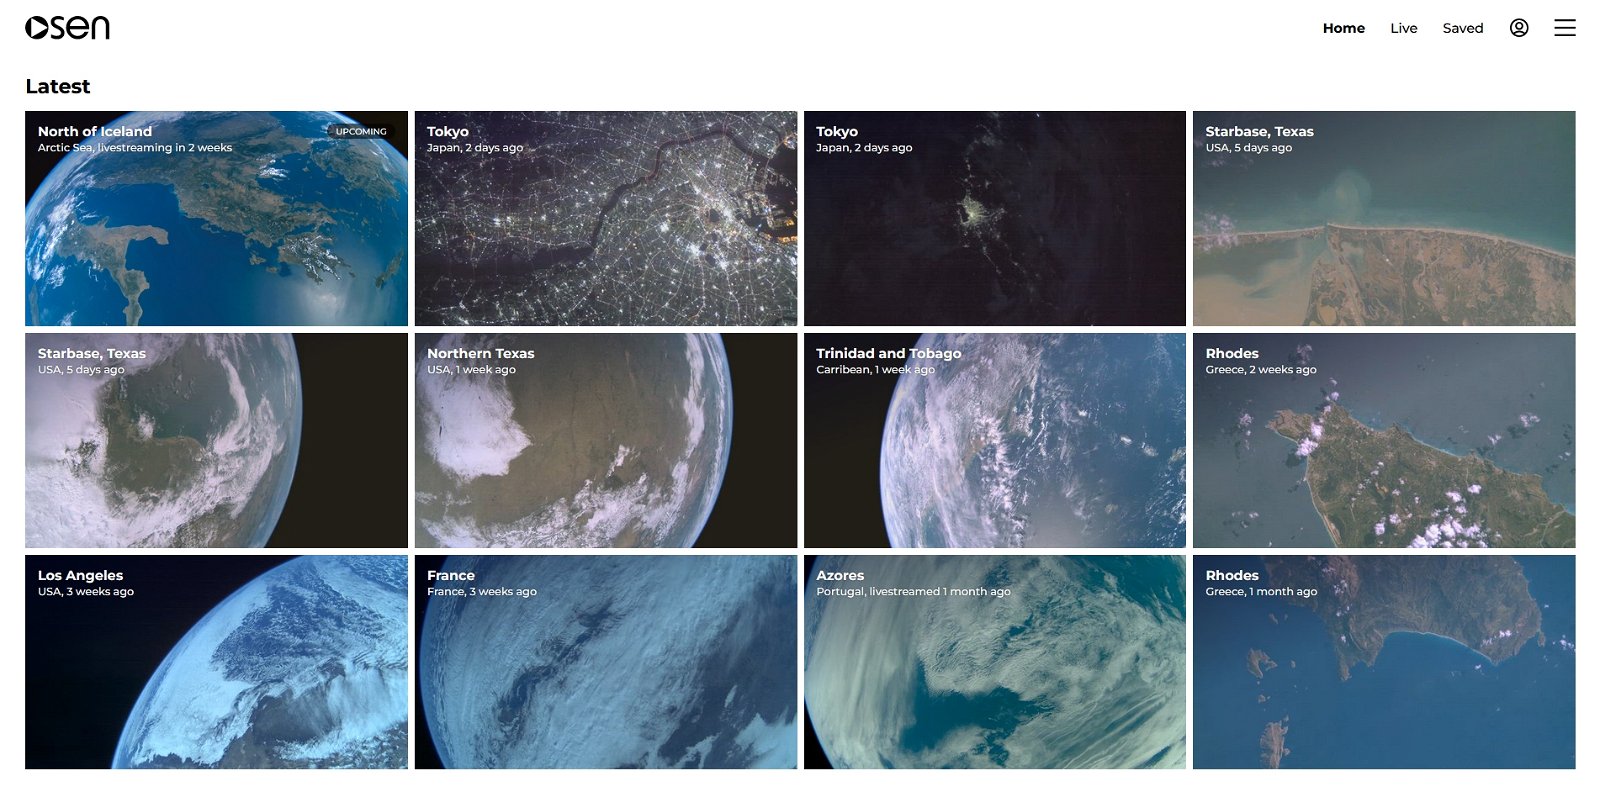 Una empresa ha enviado 3 cámaras al espacio: ya puedes ver imágenes de la Tierra en streaming